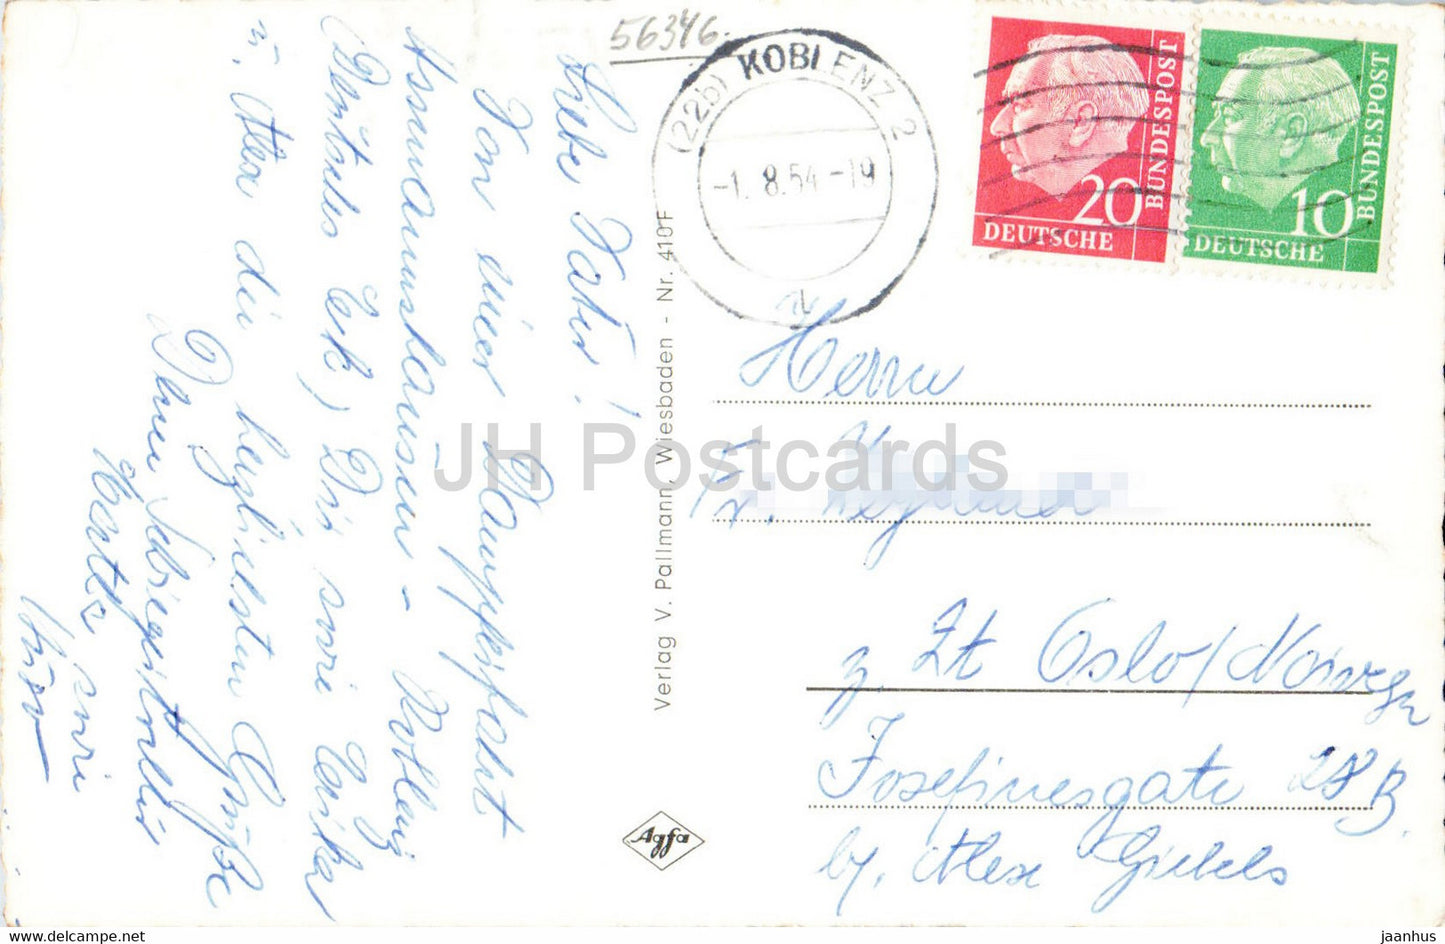 St Goarshausen - Loreley - navire - carte postale ancienne - 1954 - Allemagne - utilisé